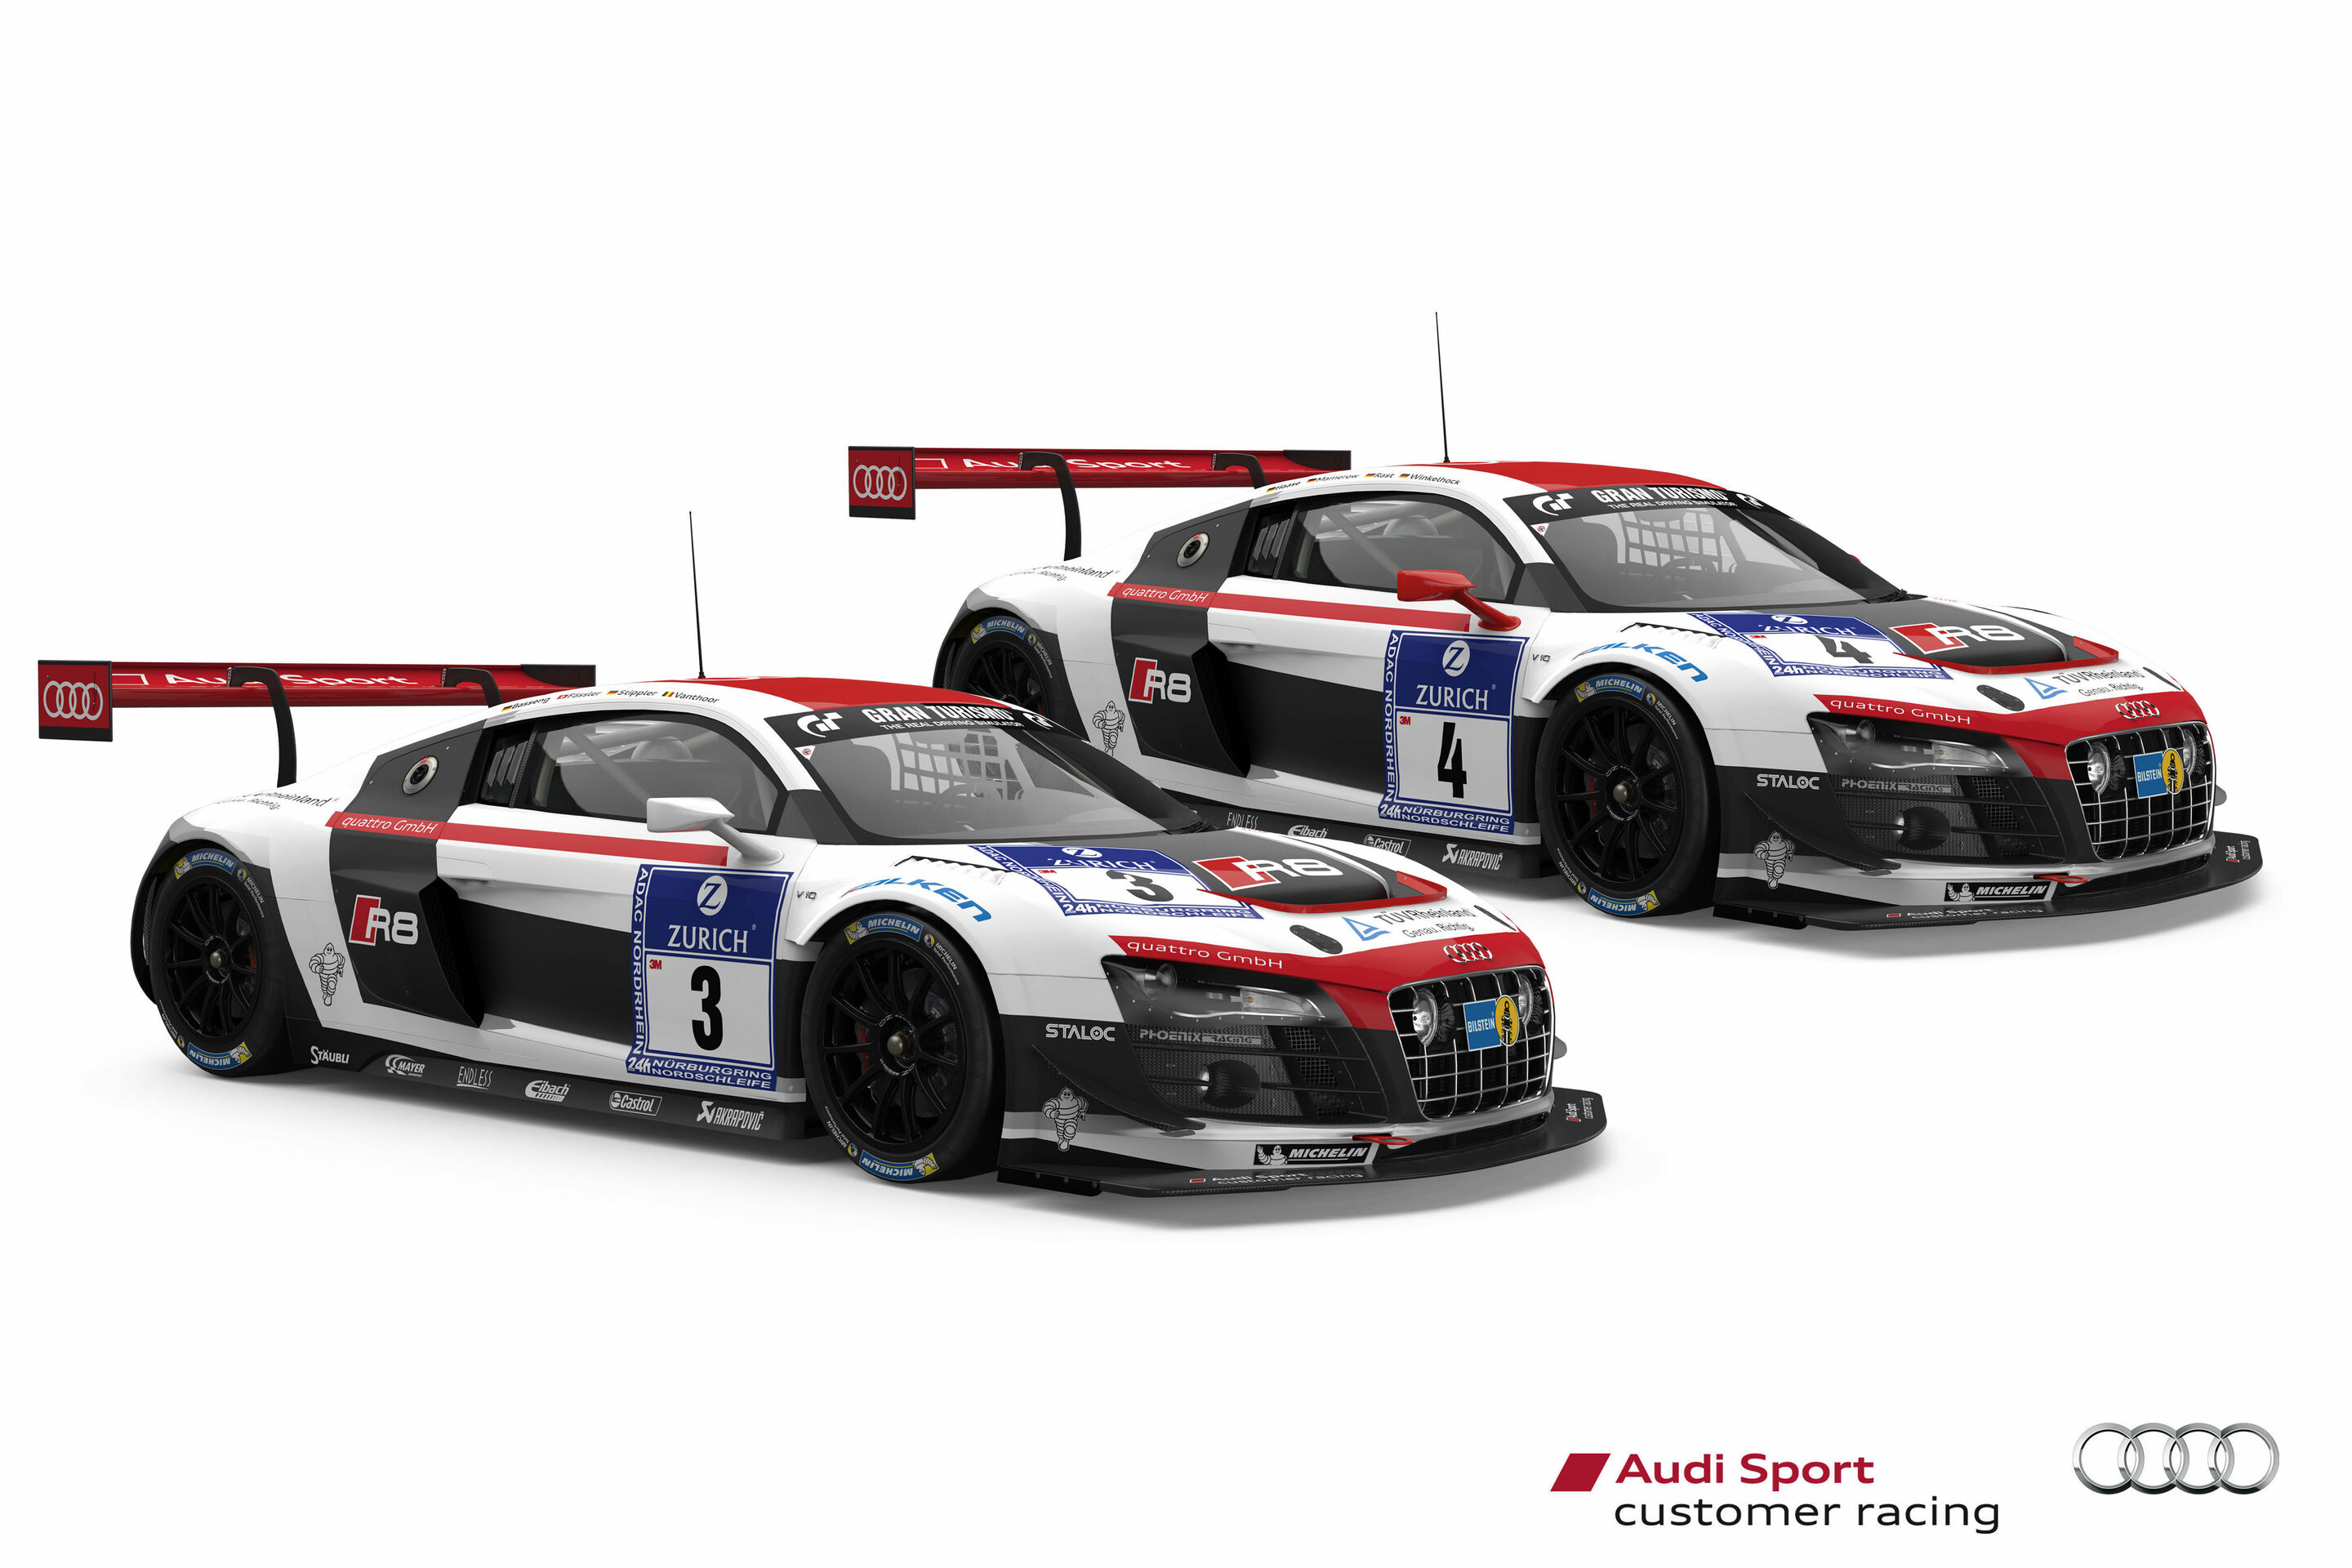 Audi teams in Nürburgring 24 Hours: Sights set on victory